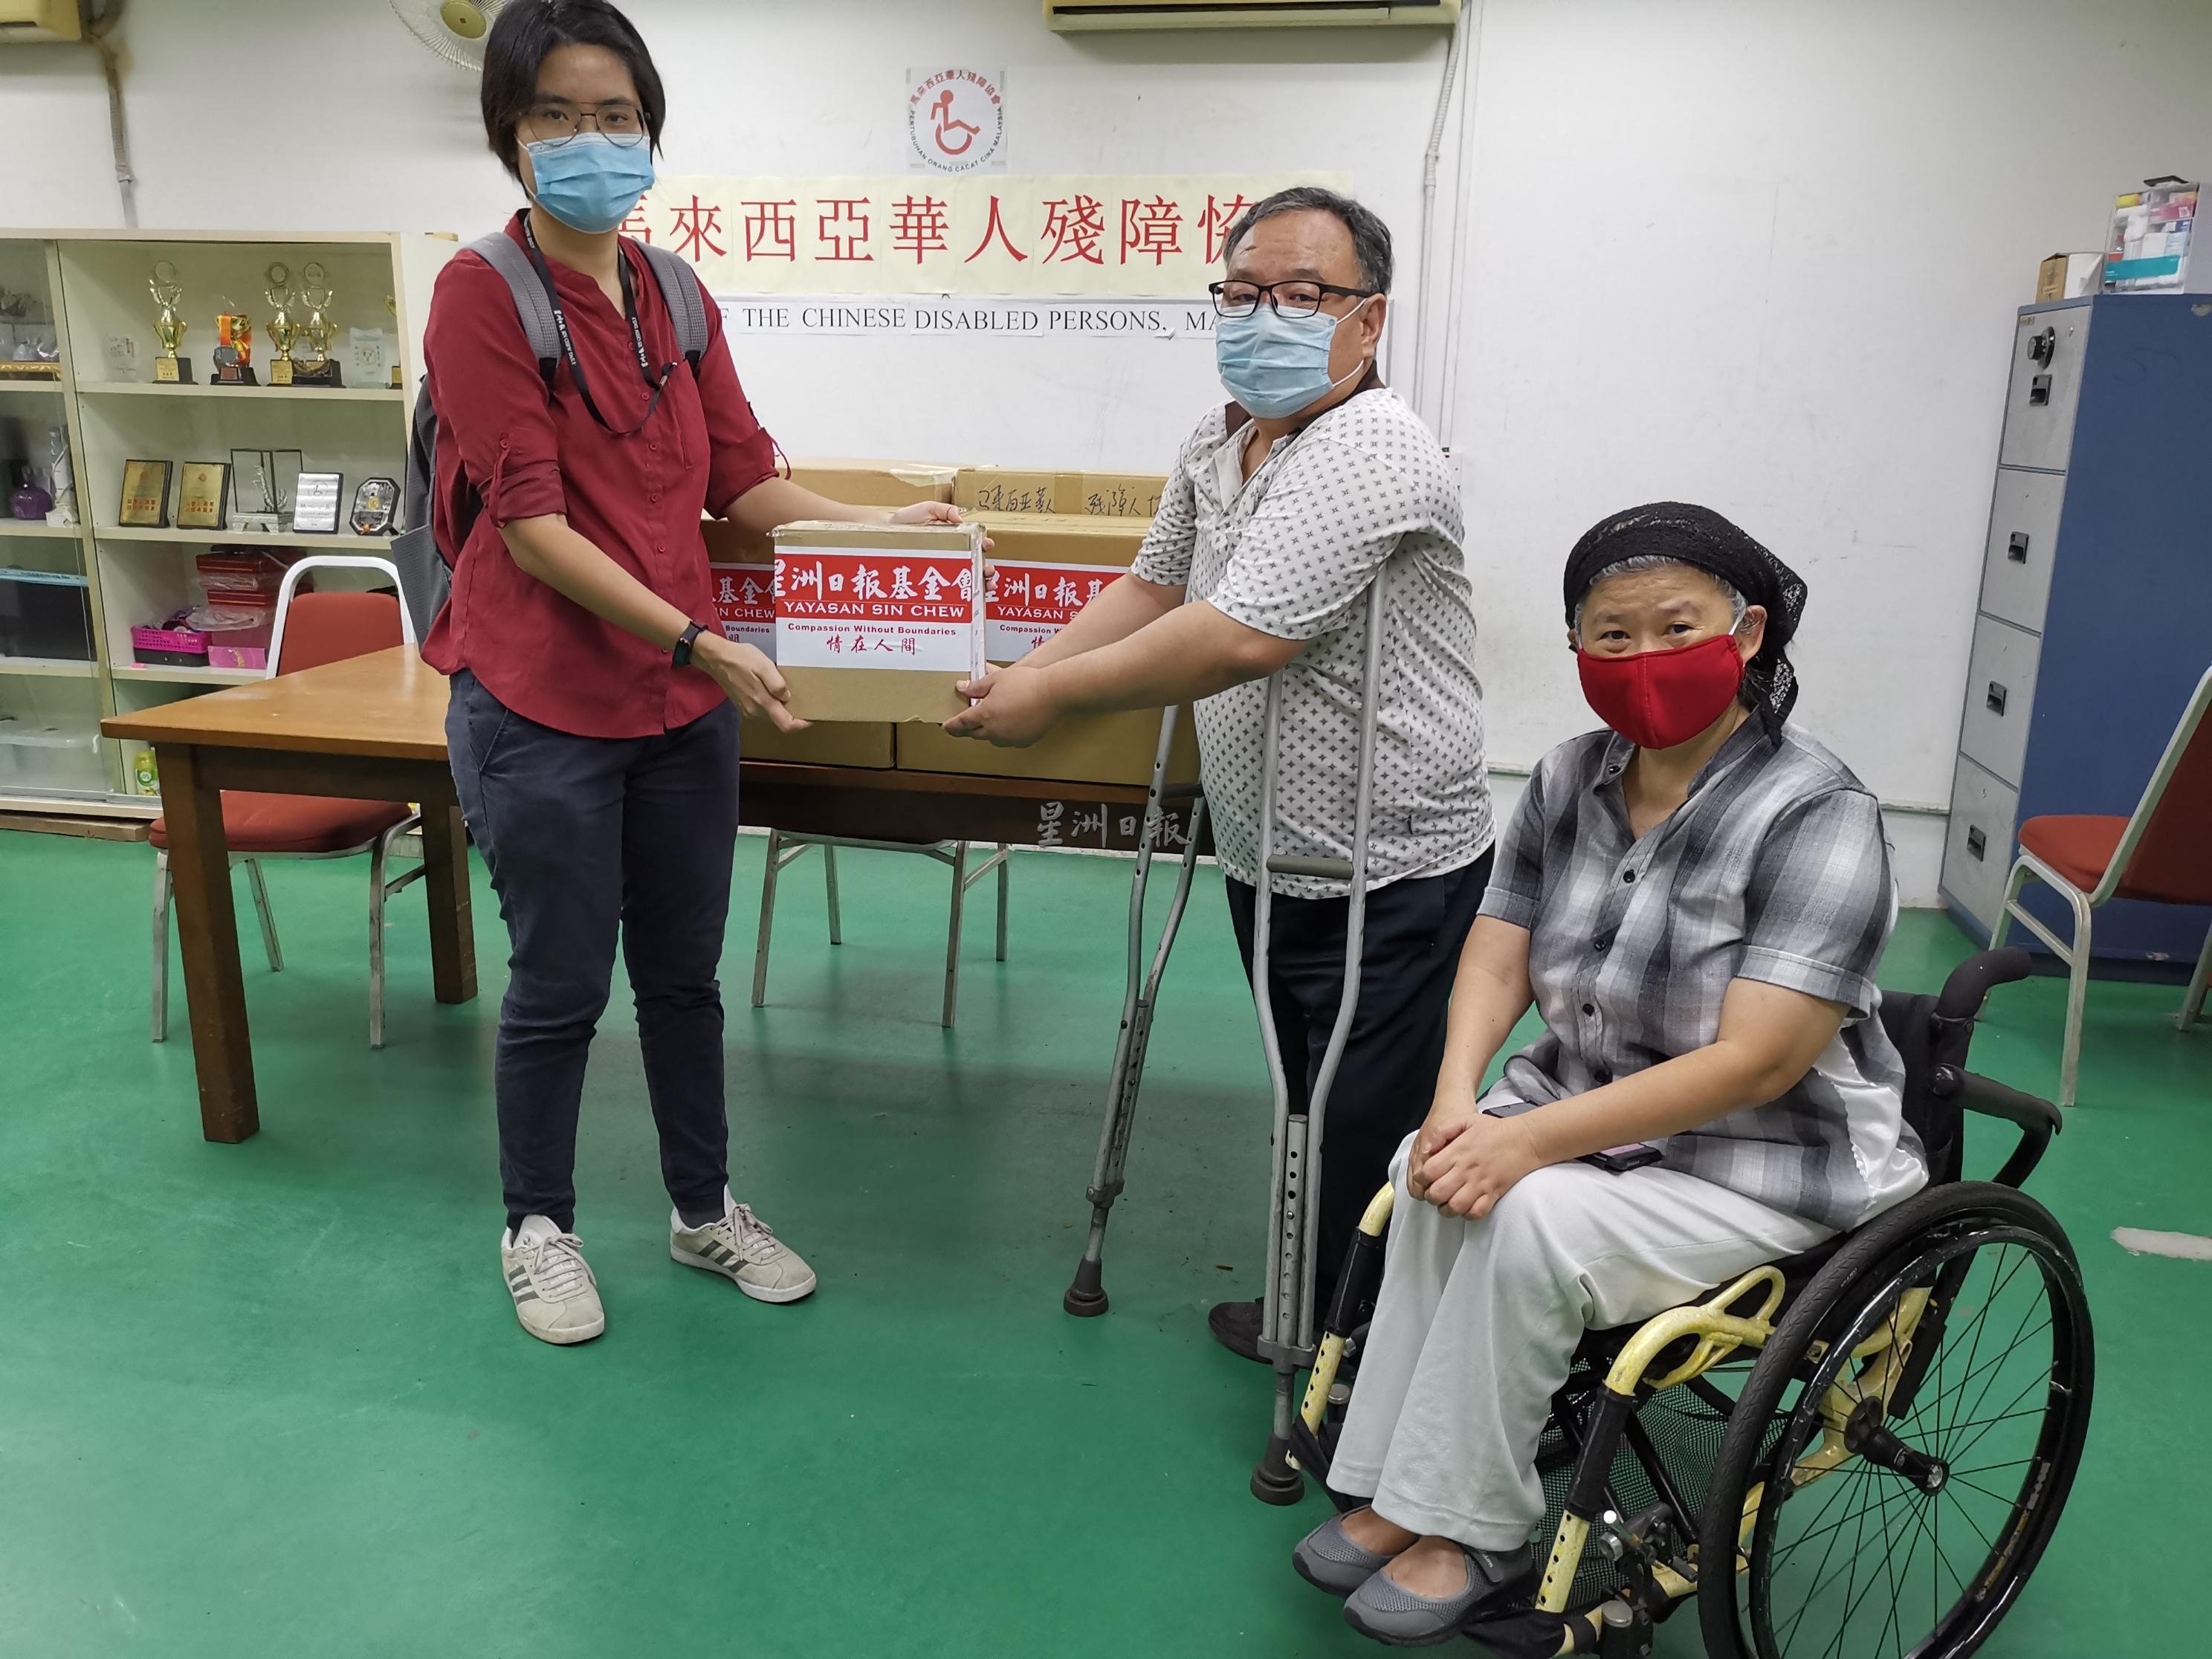 星洲日报基金会代表陈彩珠（左）移交防护用品予马来西亚华人残障协会会长吴爱平（中），谢秀贞（坐者）见证。